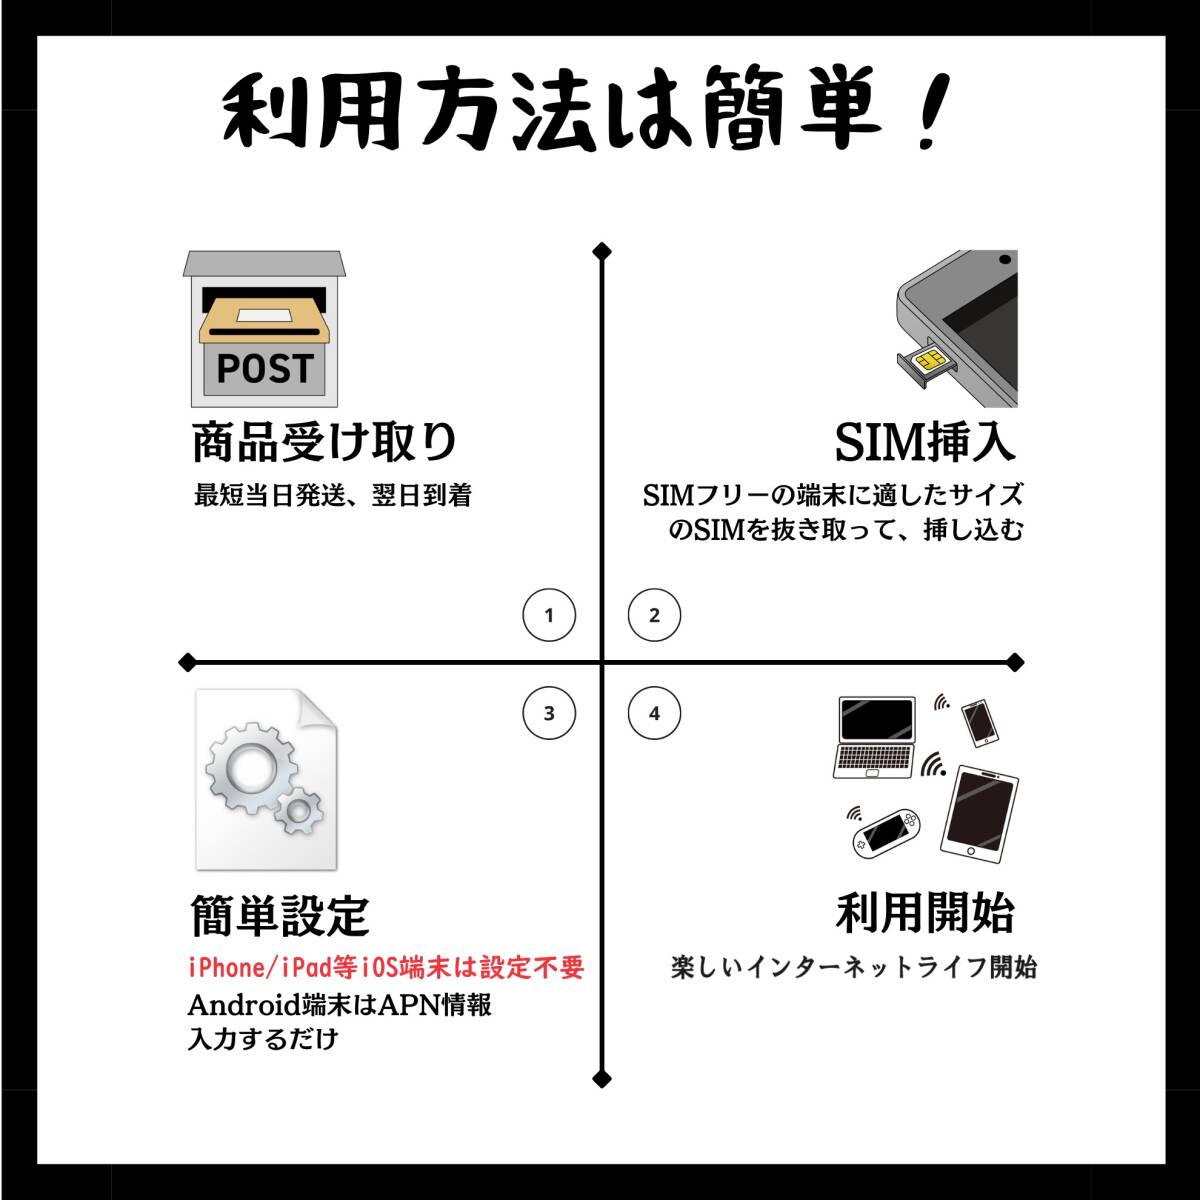 SIM for Japan 日本国内用 180日間 10GB (標準/マイクロ/ナノ)3-in-1 docomo データ通信専用 4G-LTE SIMカード/NTTドコモ 通信網の画像6